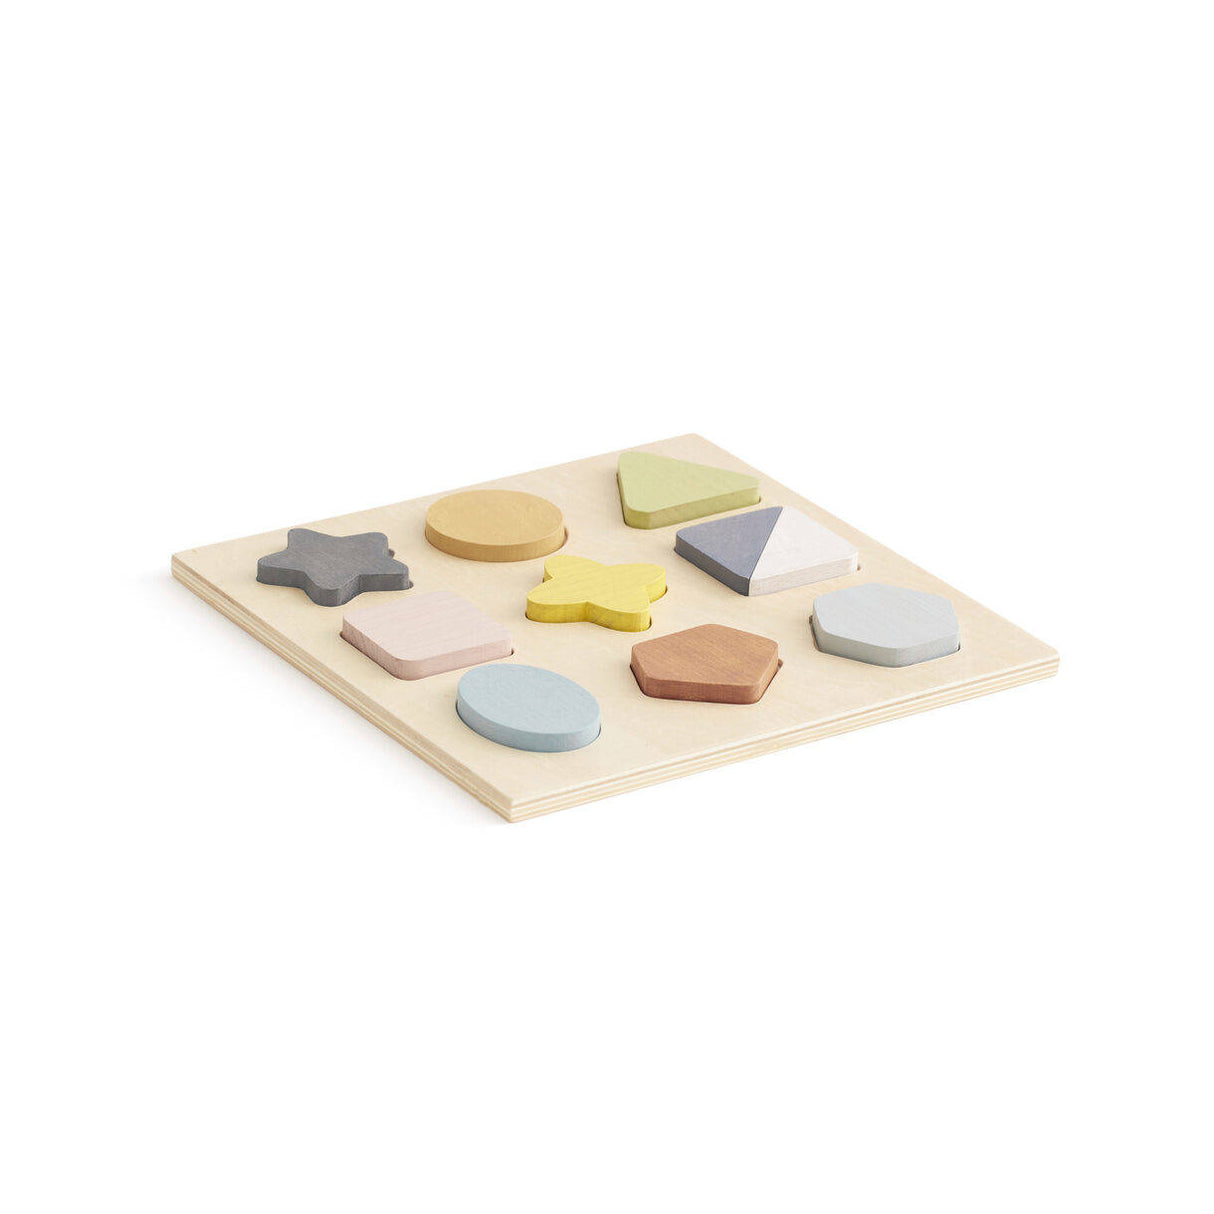 Puzzle drewniane Kids Concept Geo, 9 części, pastelowe kolory, różnorodne kształty, bezpieczna zabawa dla dzieci od 18 miesięcy.